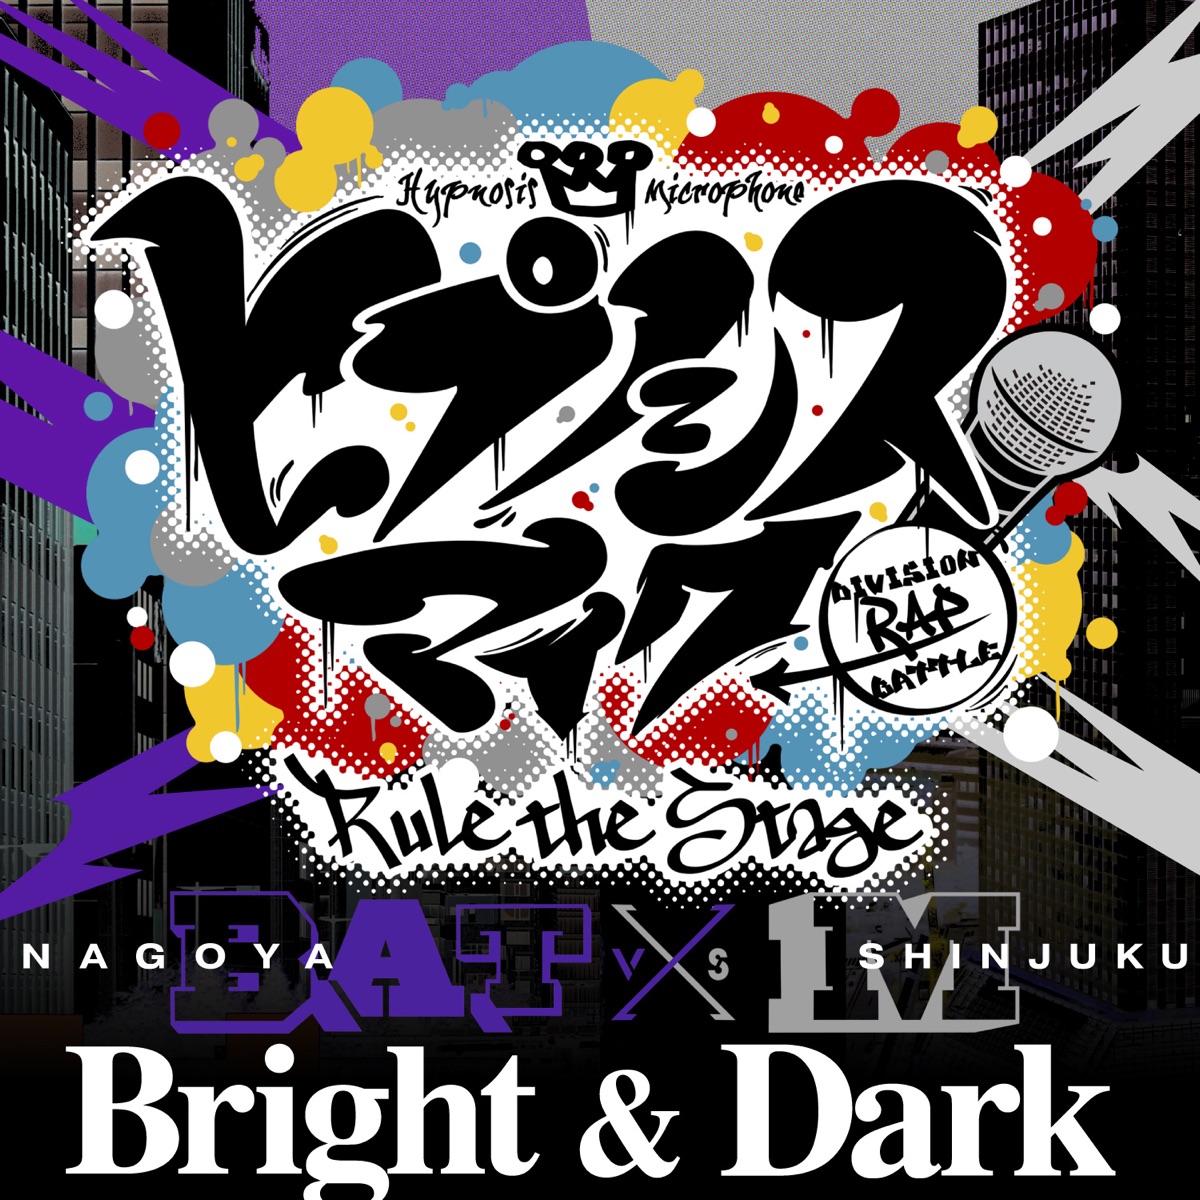 『ヒプノシスマイク-D.R.B- Rule the Stage (B.A.T vs M All Cast) - Bright & Dark』収録の『Bright & Dark』ジャケット